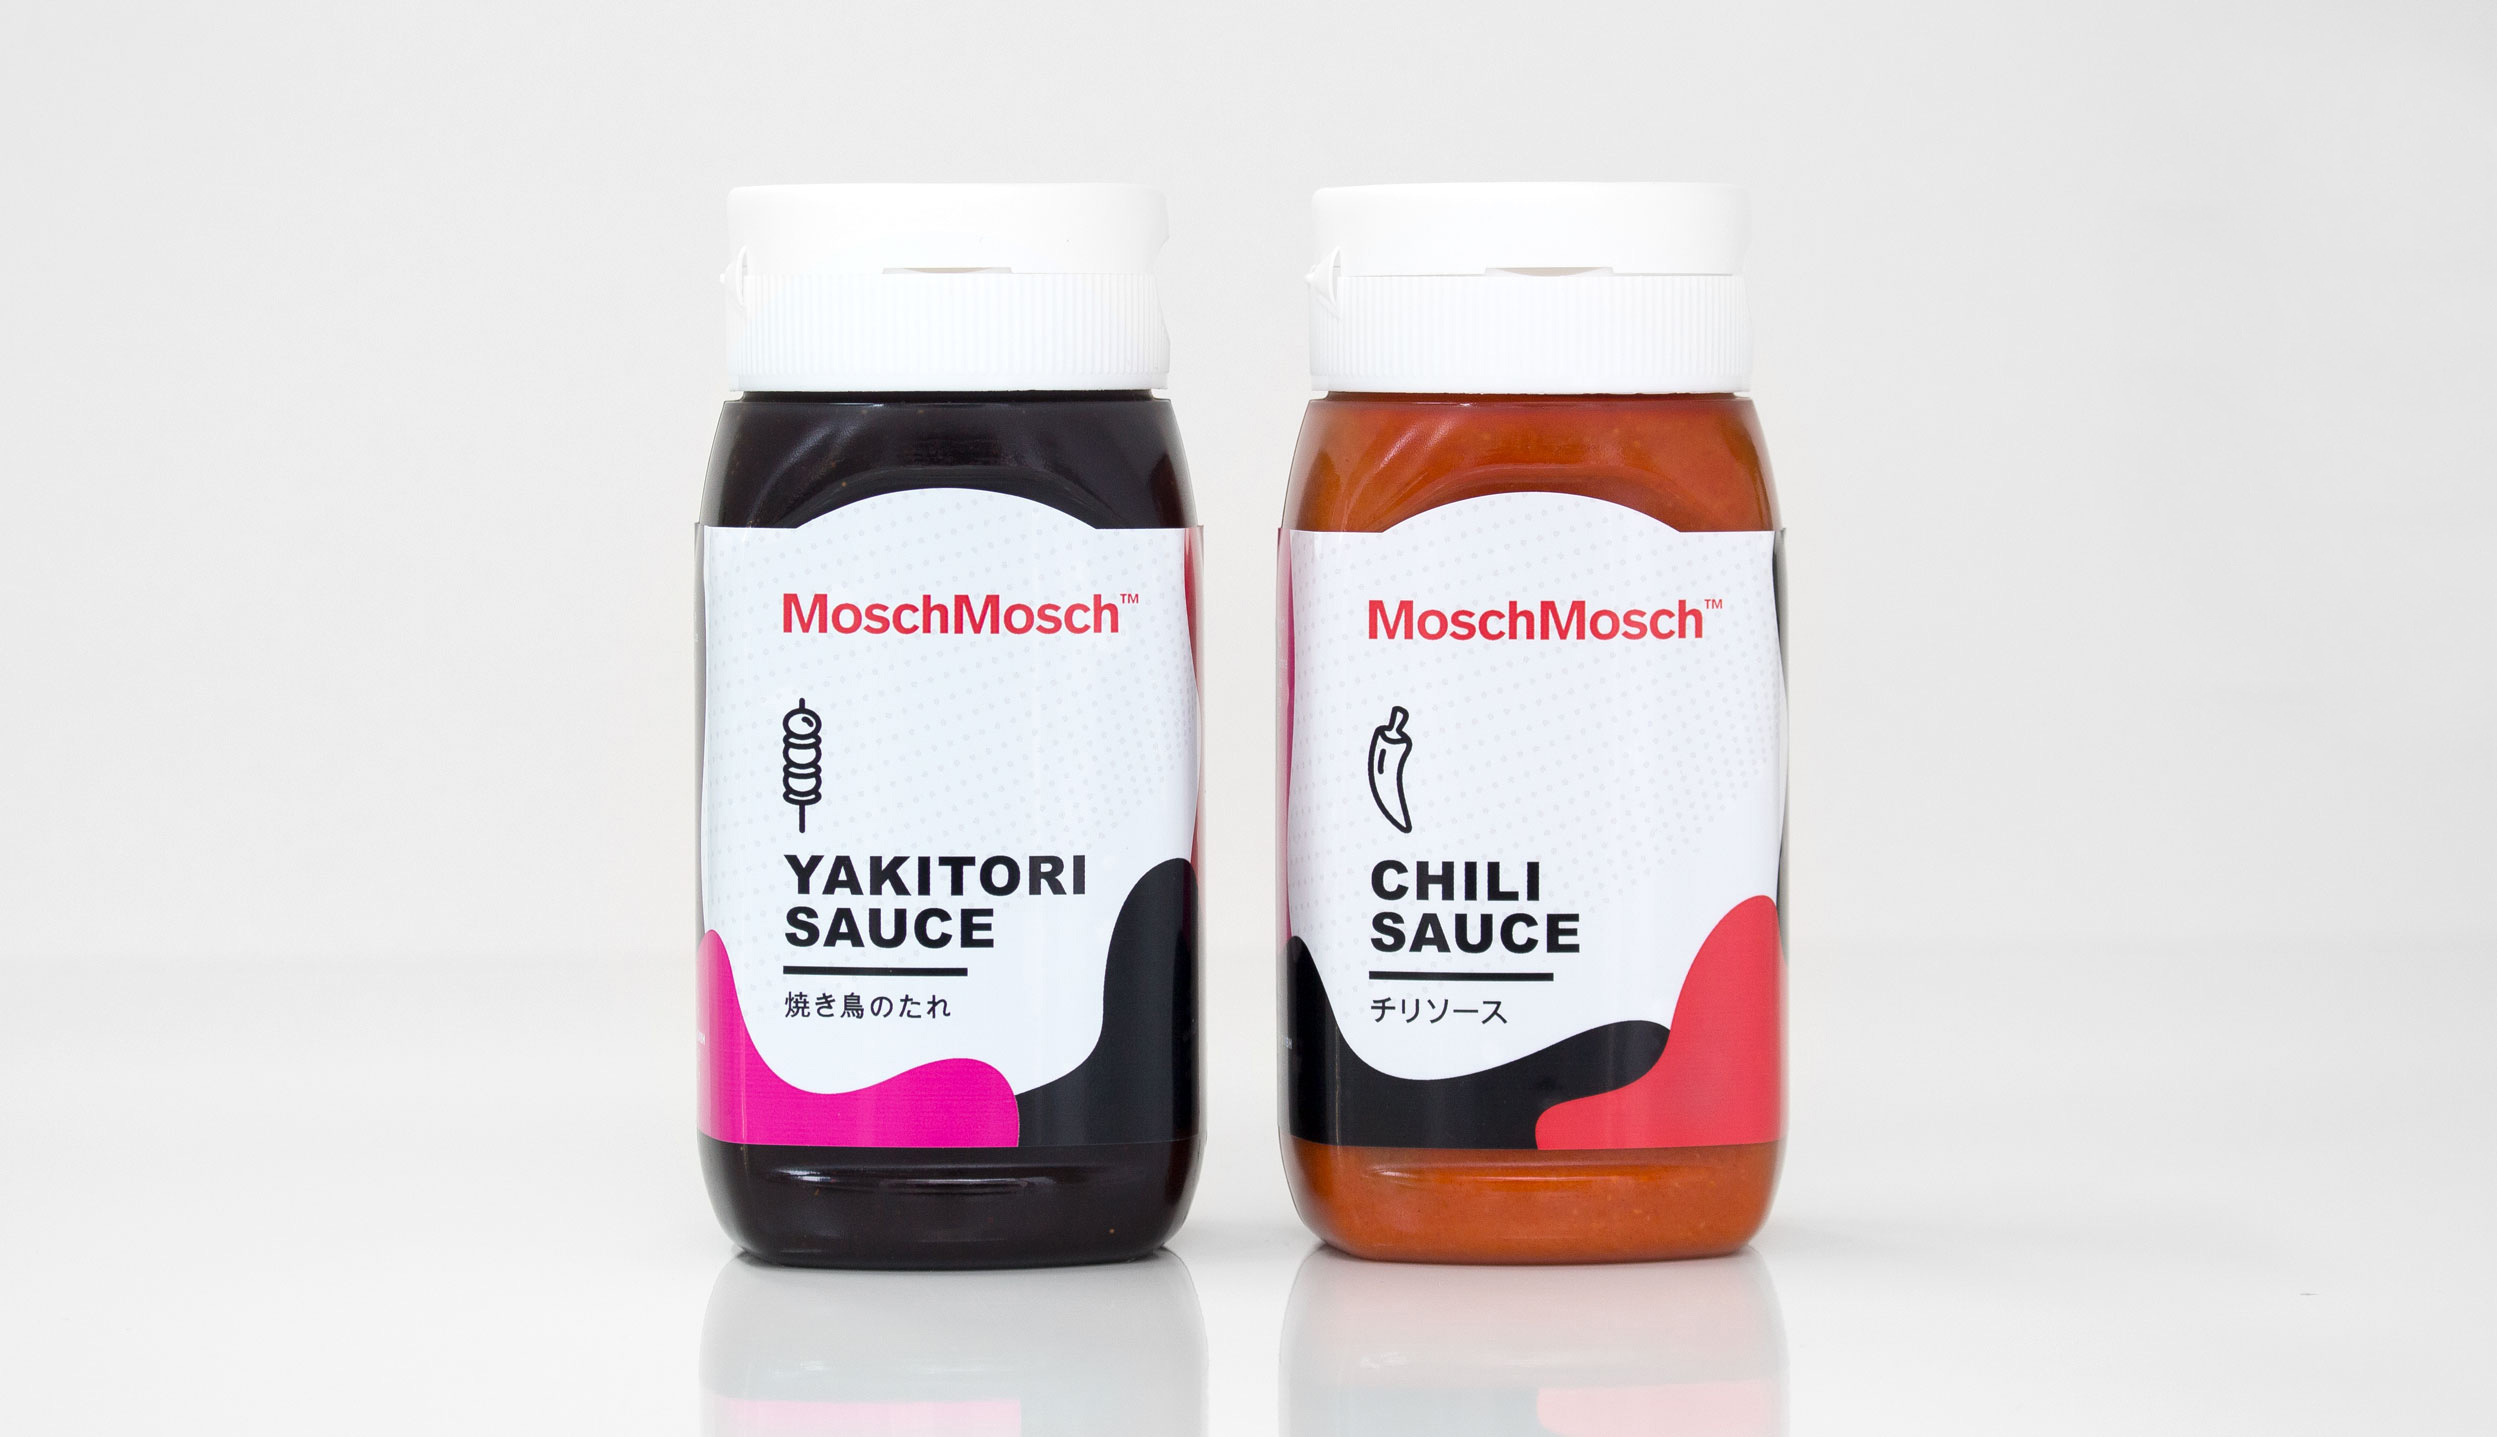 MoschMosch Packaging Design